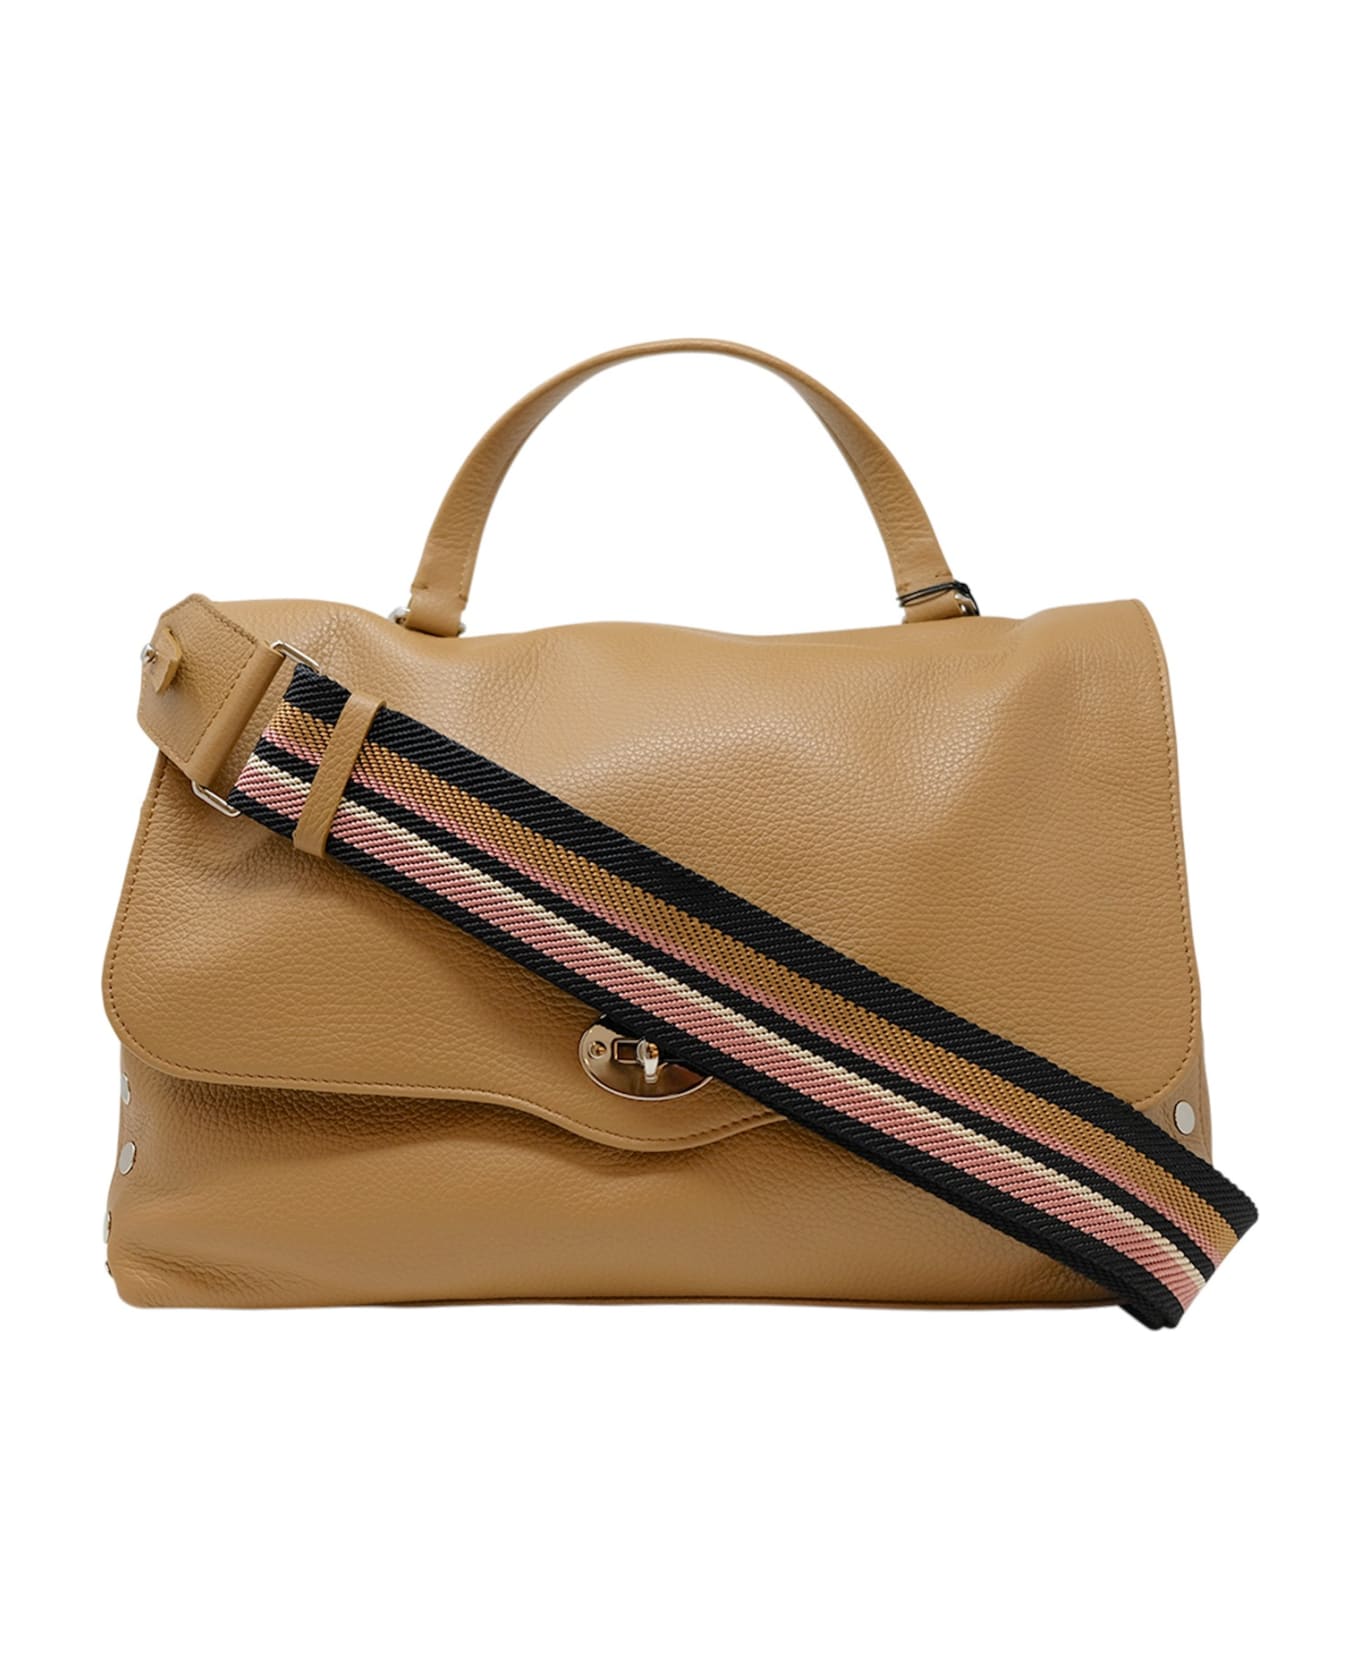 Zanellato 068010-0050000-z0260 Postina Daily Giorno M Cappuccino Leather Handbag - BEIGE